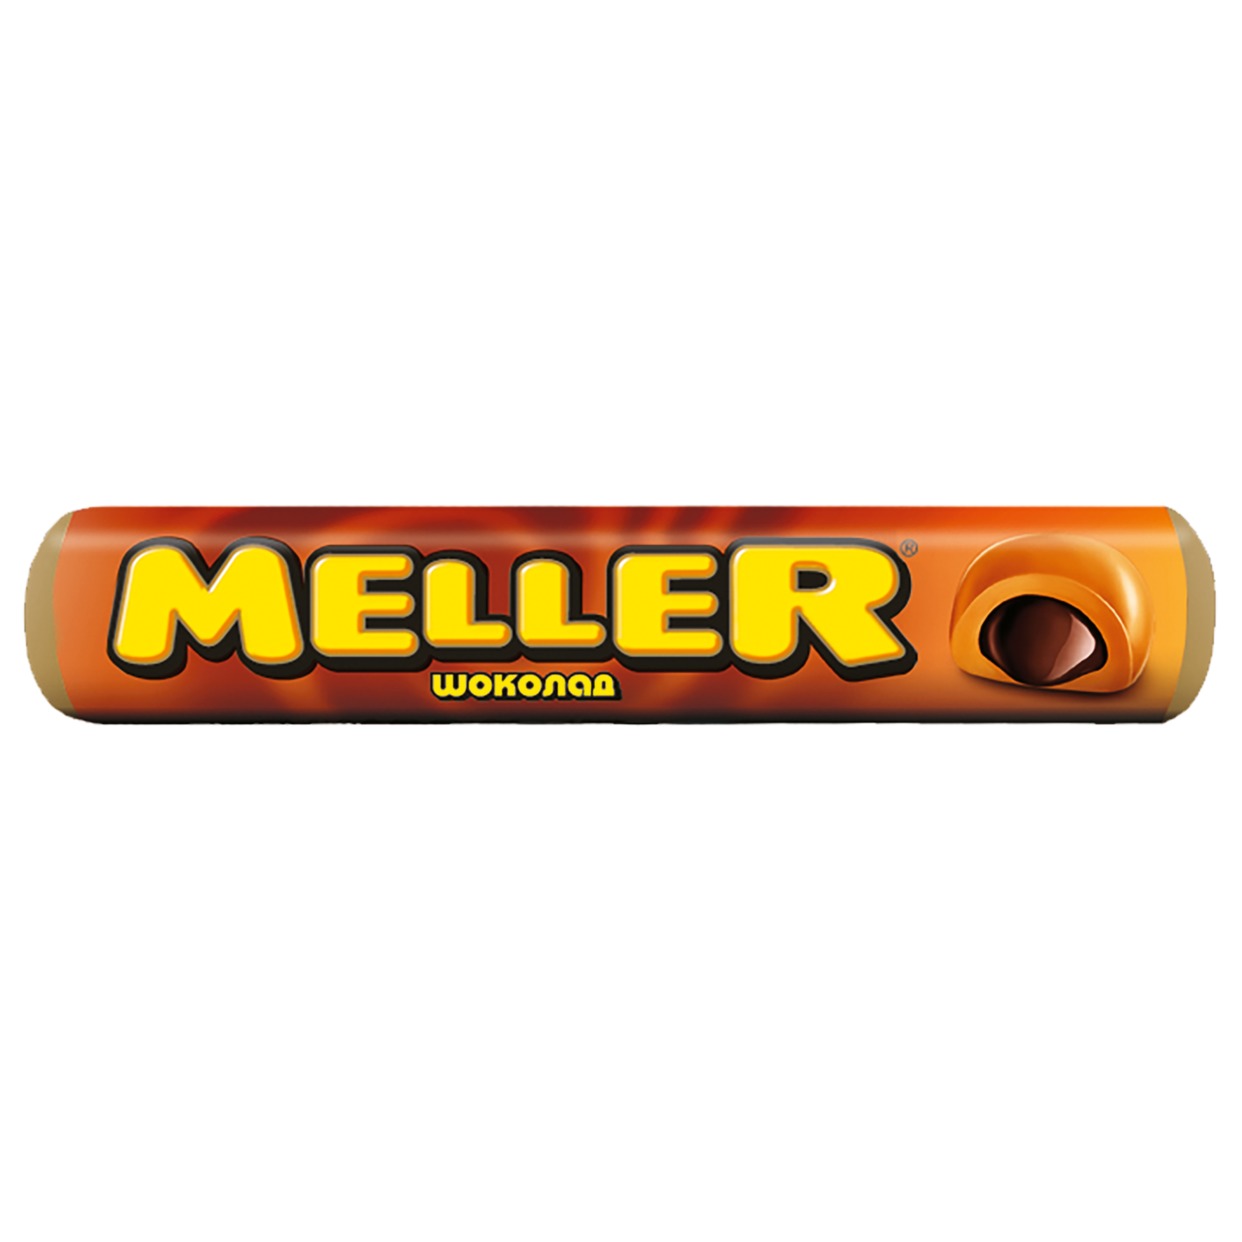 MELLER Ирис с шоколадом 38г по акции в Пятерочке